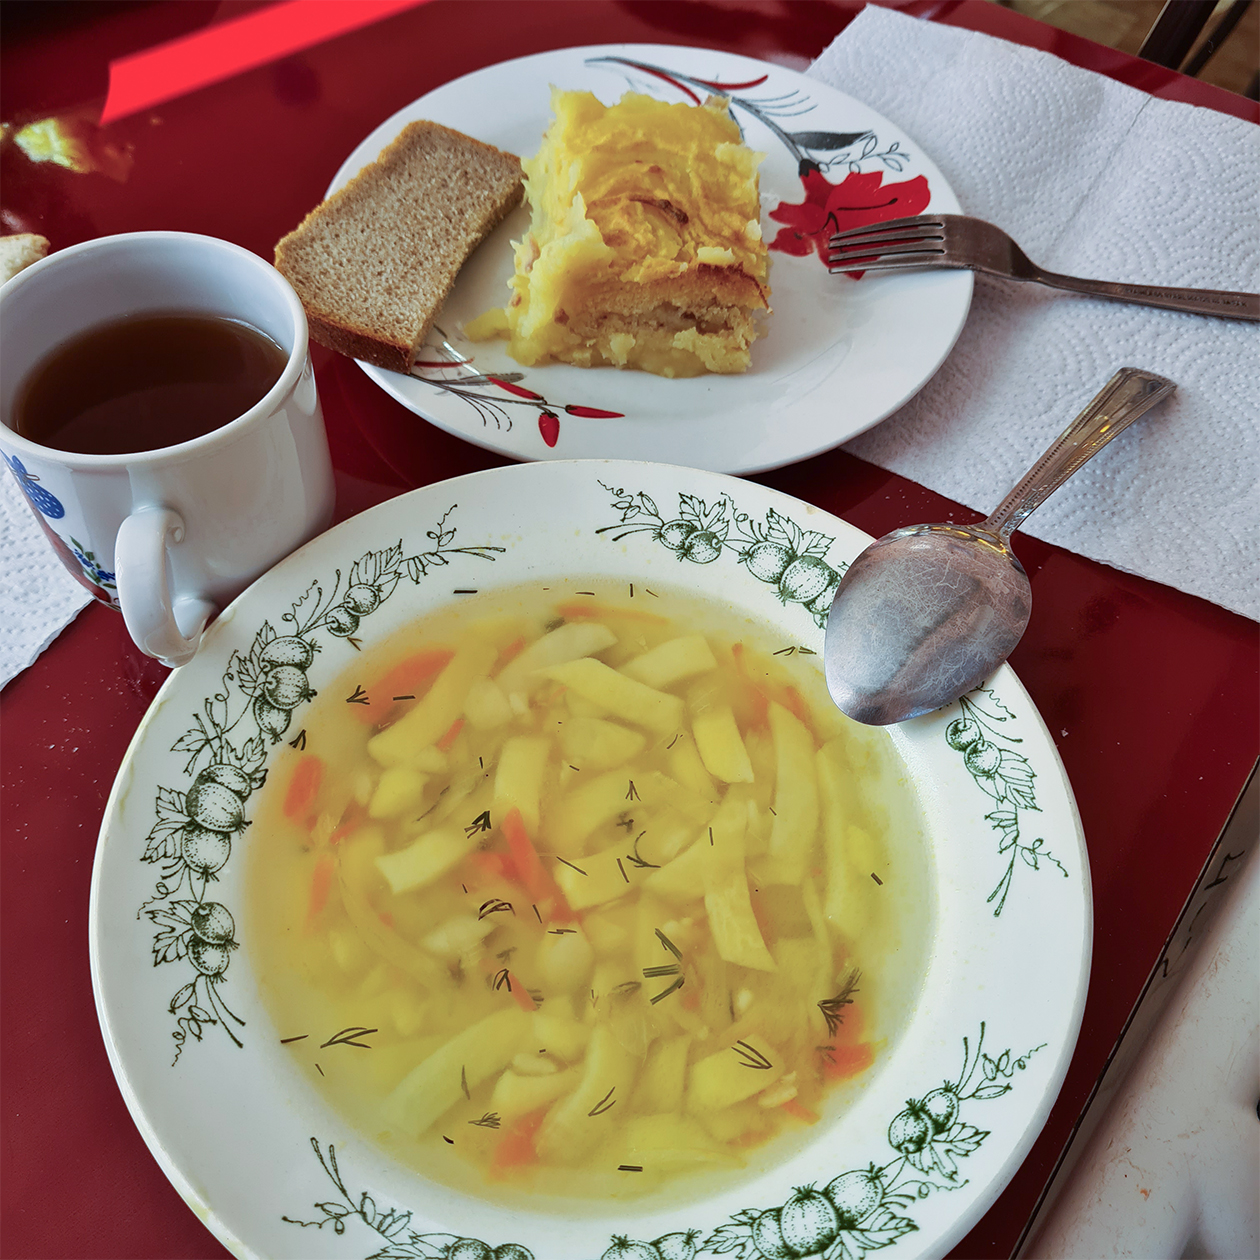 Обед: картофельный суп на овощном бульоне, картофельная запеканка, хлеб, компот